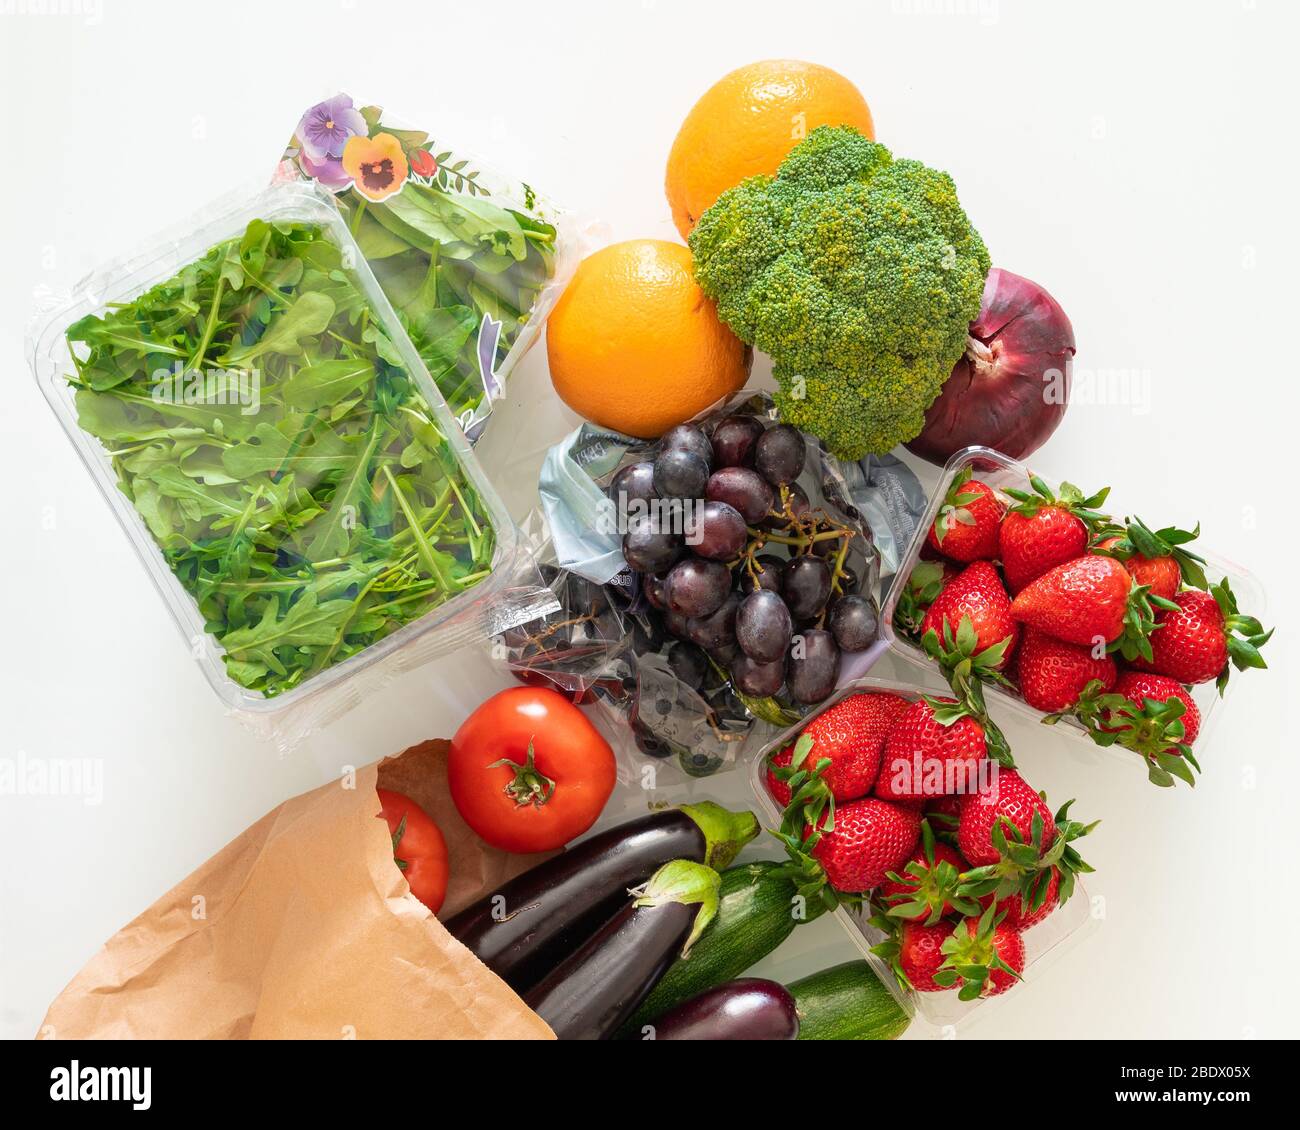 Fruits et légumes multicolores sur une table lumineuse. Jus et ingrédients de smoothie. Une alimentation saine Banque D'Images